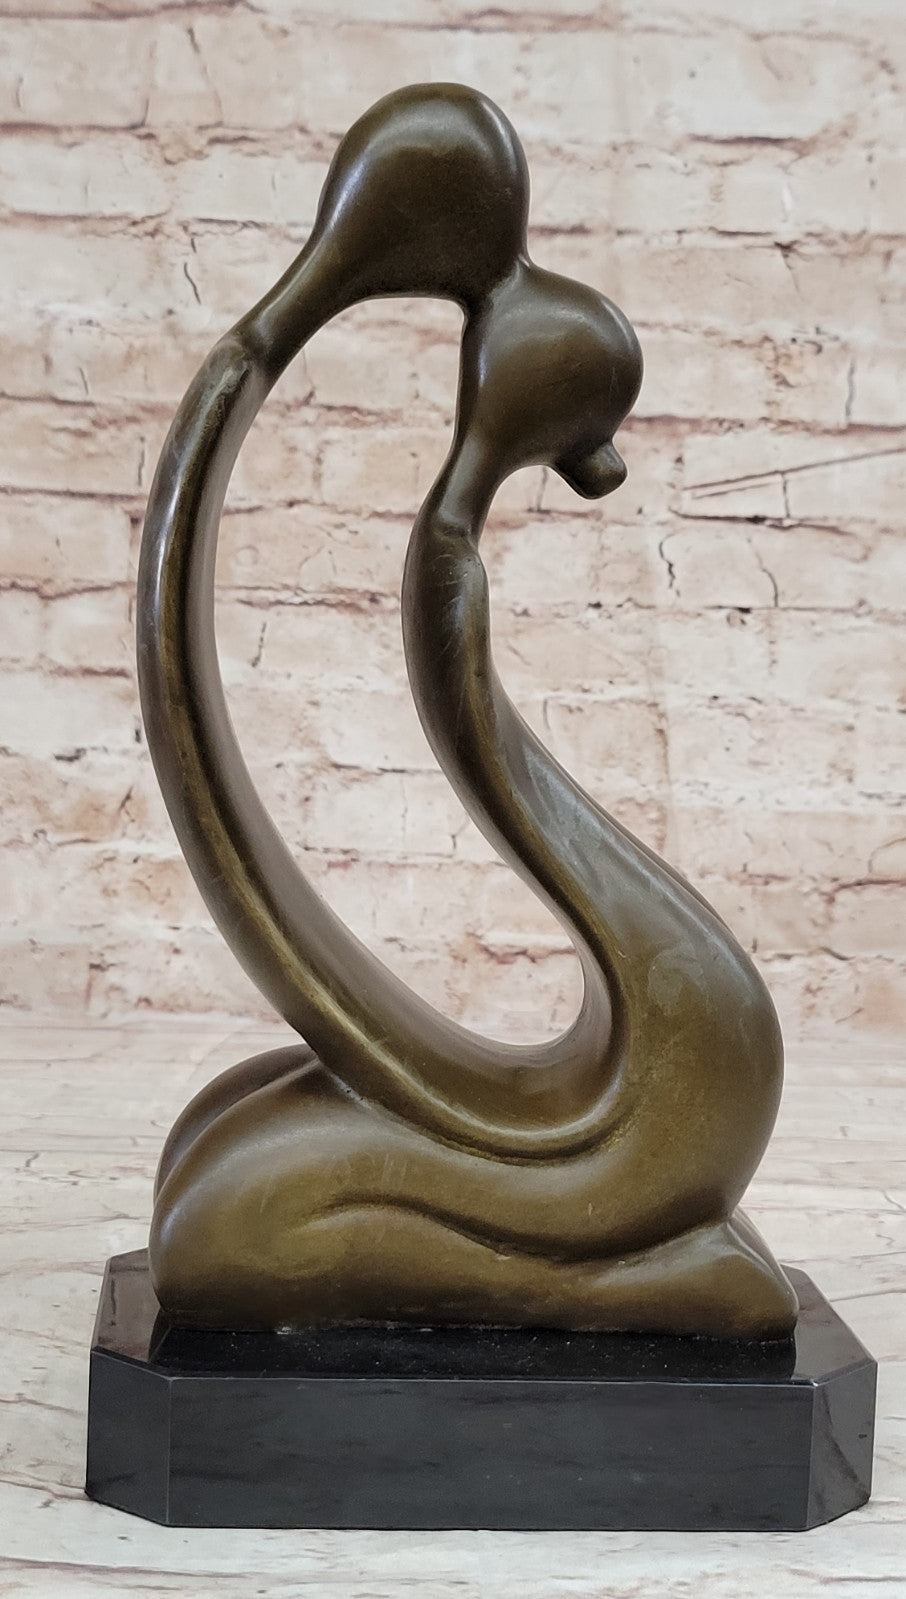 Handmade Modern Art Kissing Pair Bronze Sculpture Lost Wax Method Decor